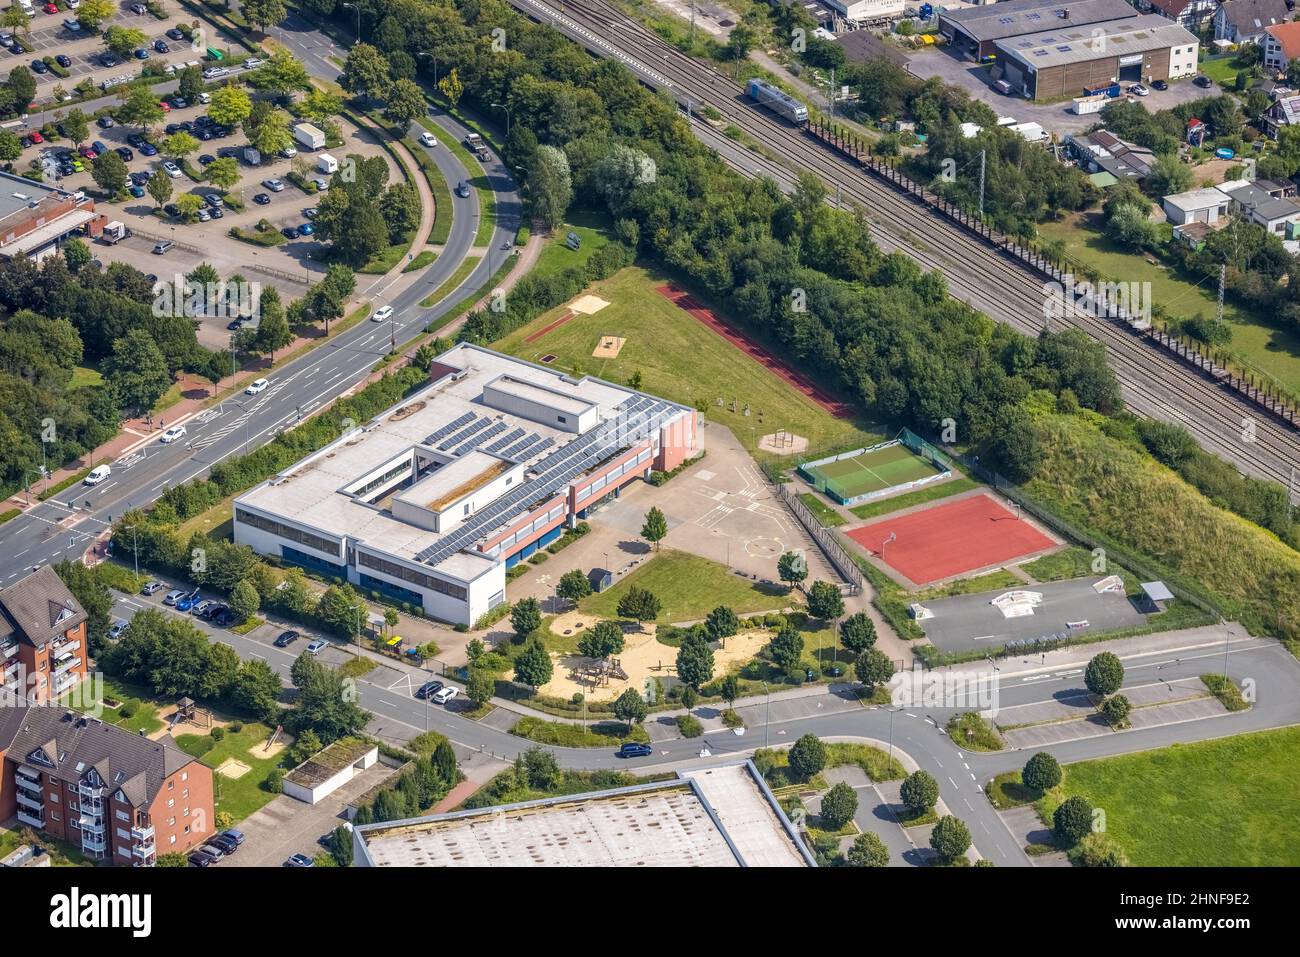 Vista aerea, Goethe School Bönen a Borgholz, Bönen, zona della Ruhr, Renania settentrionale-Vestfalia, Germania, Istruzione, istituzione educativa, DE, Europa, insegnare Foto Stock